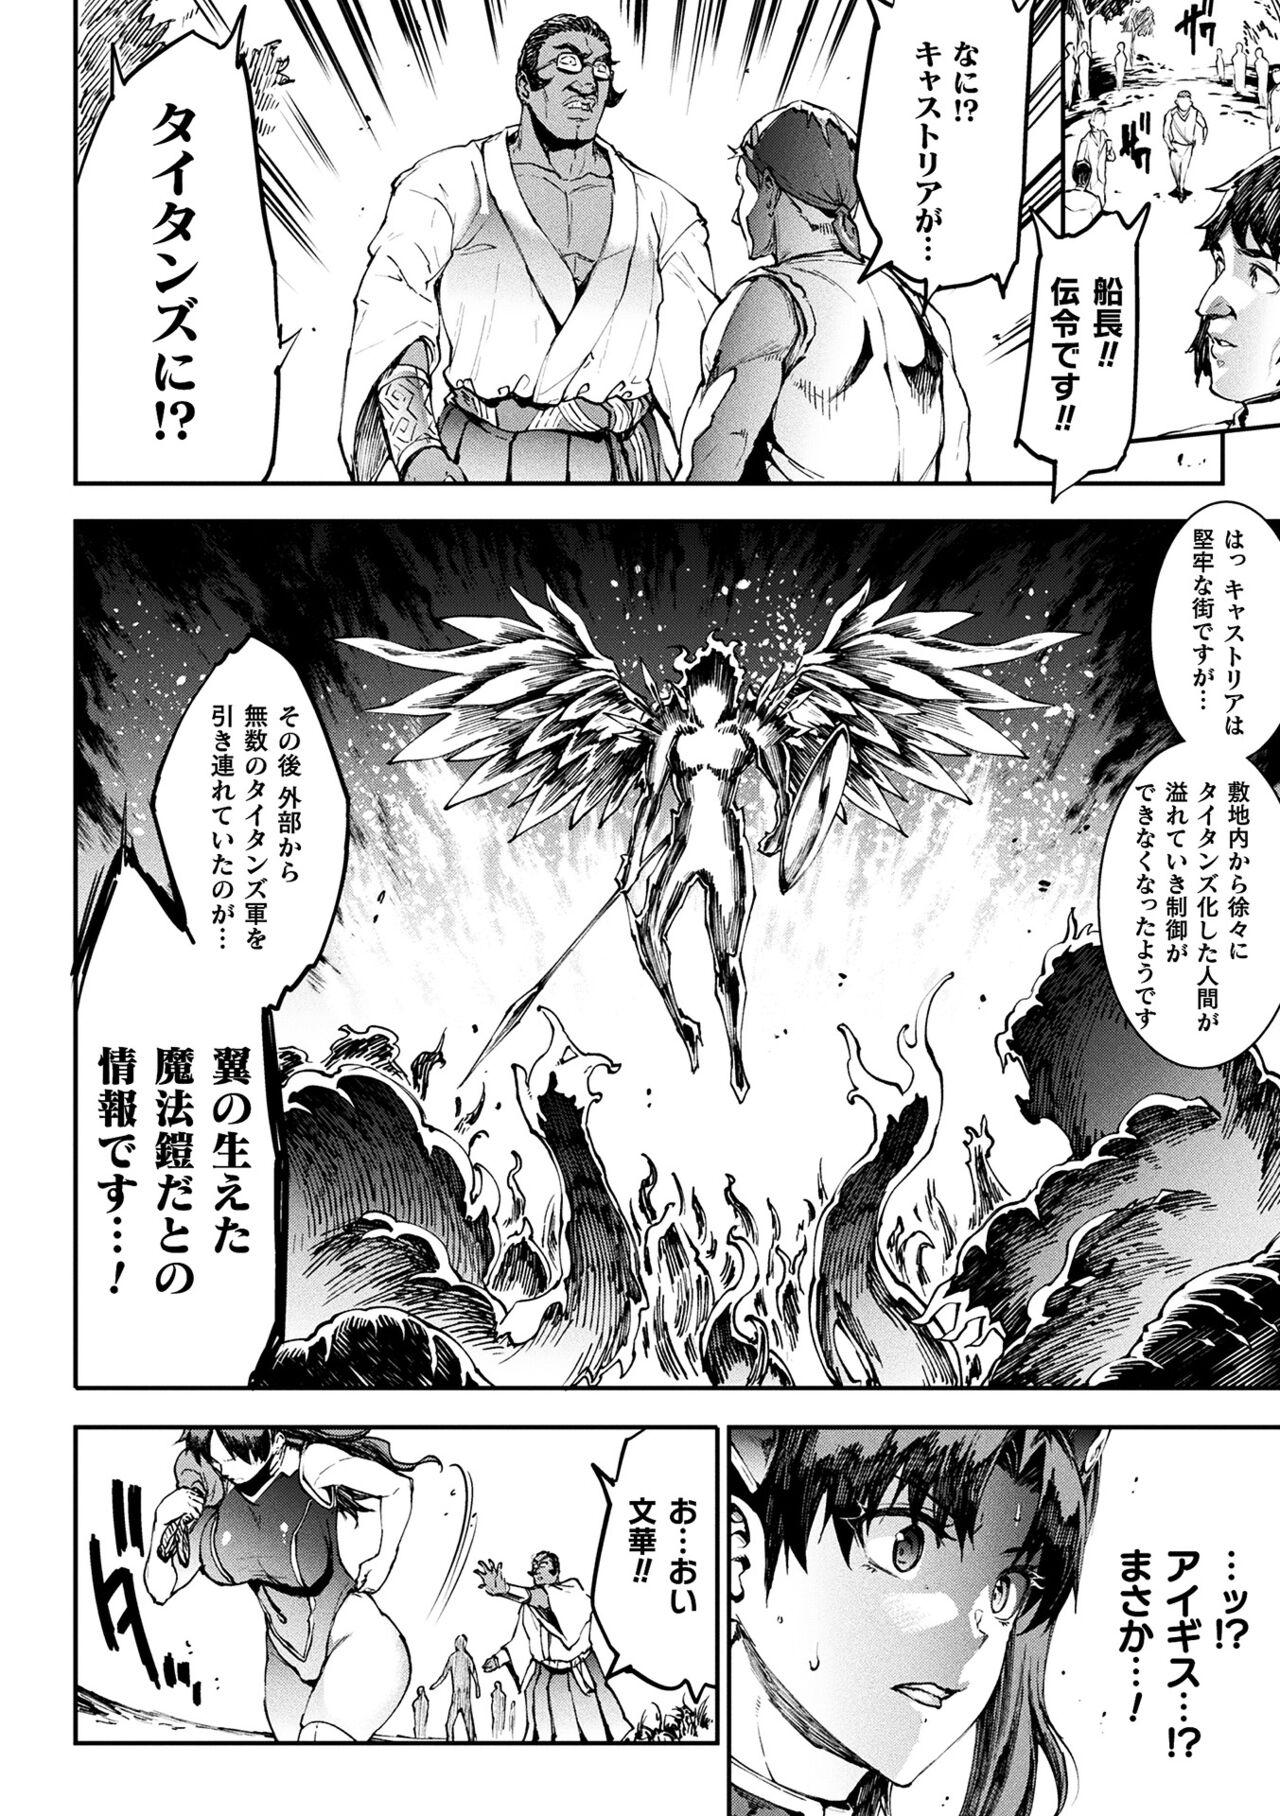 [Erect Sawaru] Raikou Shinki Igis Magia III -PANDRA saga 3rd ignition- 4 [Digital] 19